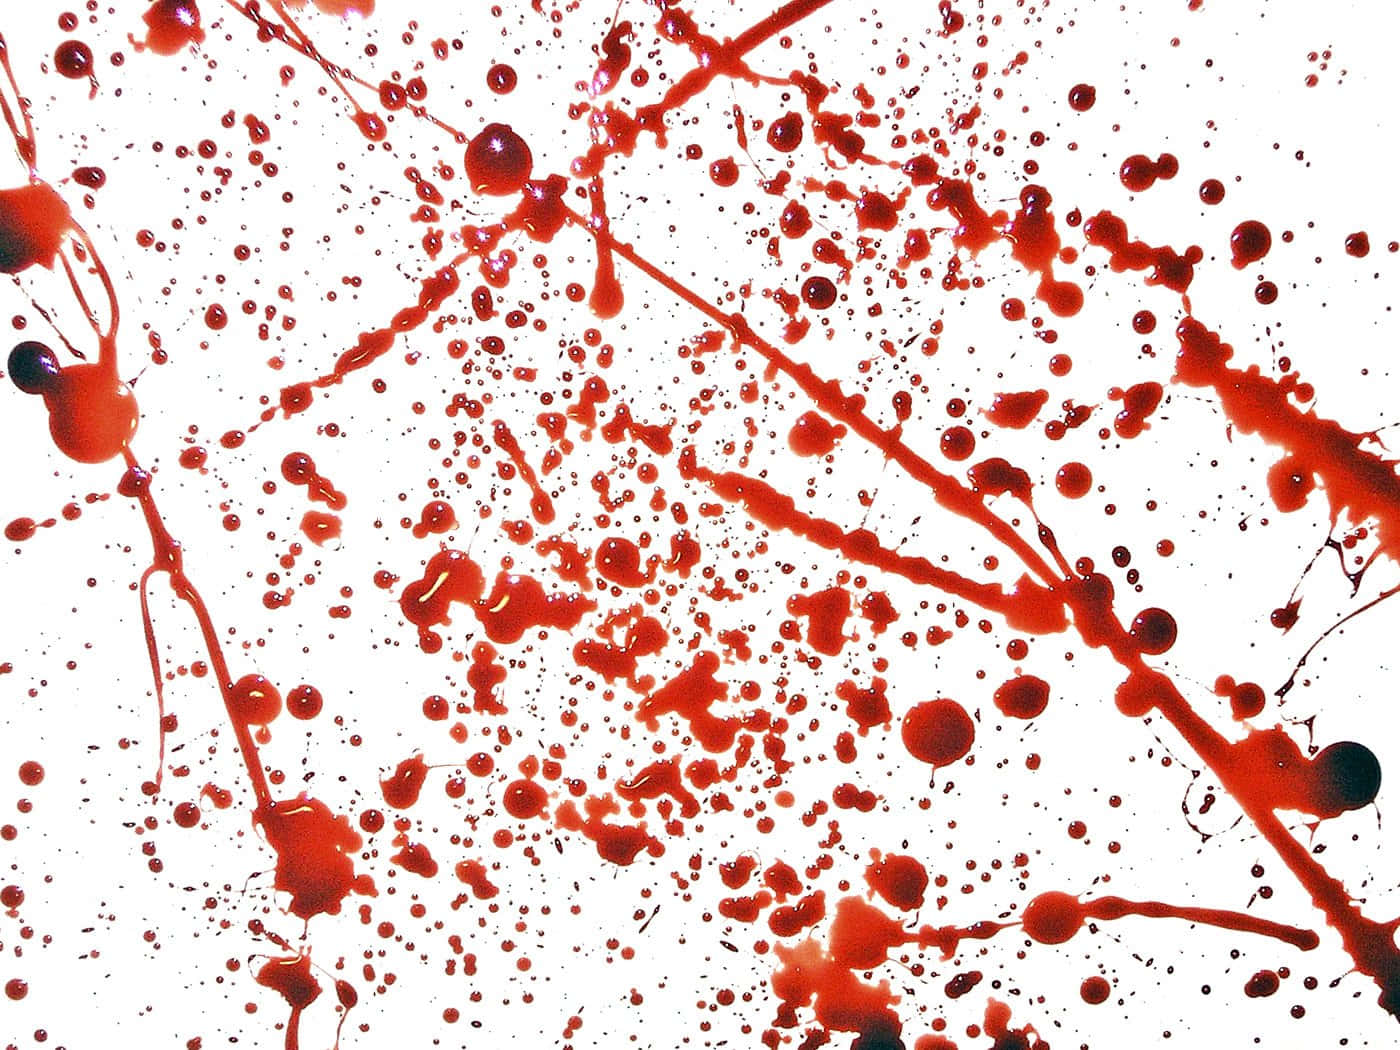 Dark Red Blood Splatter Background